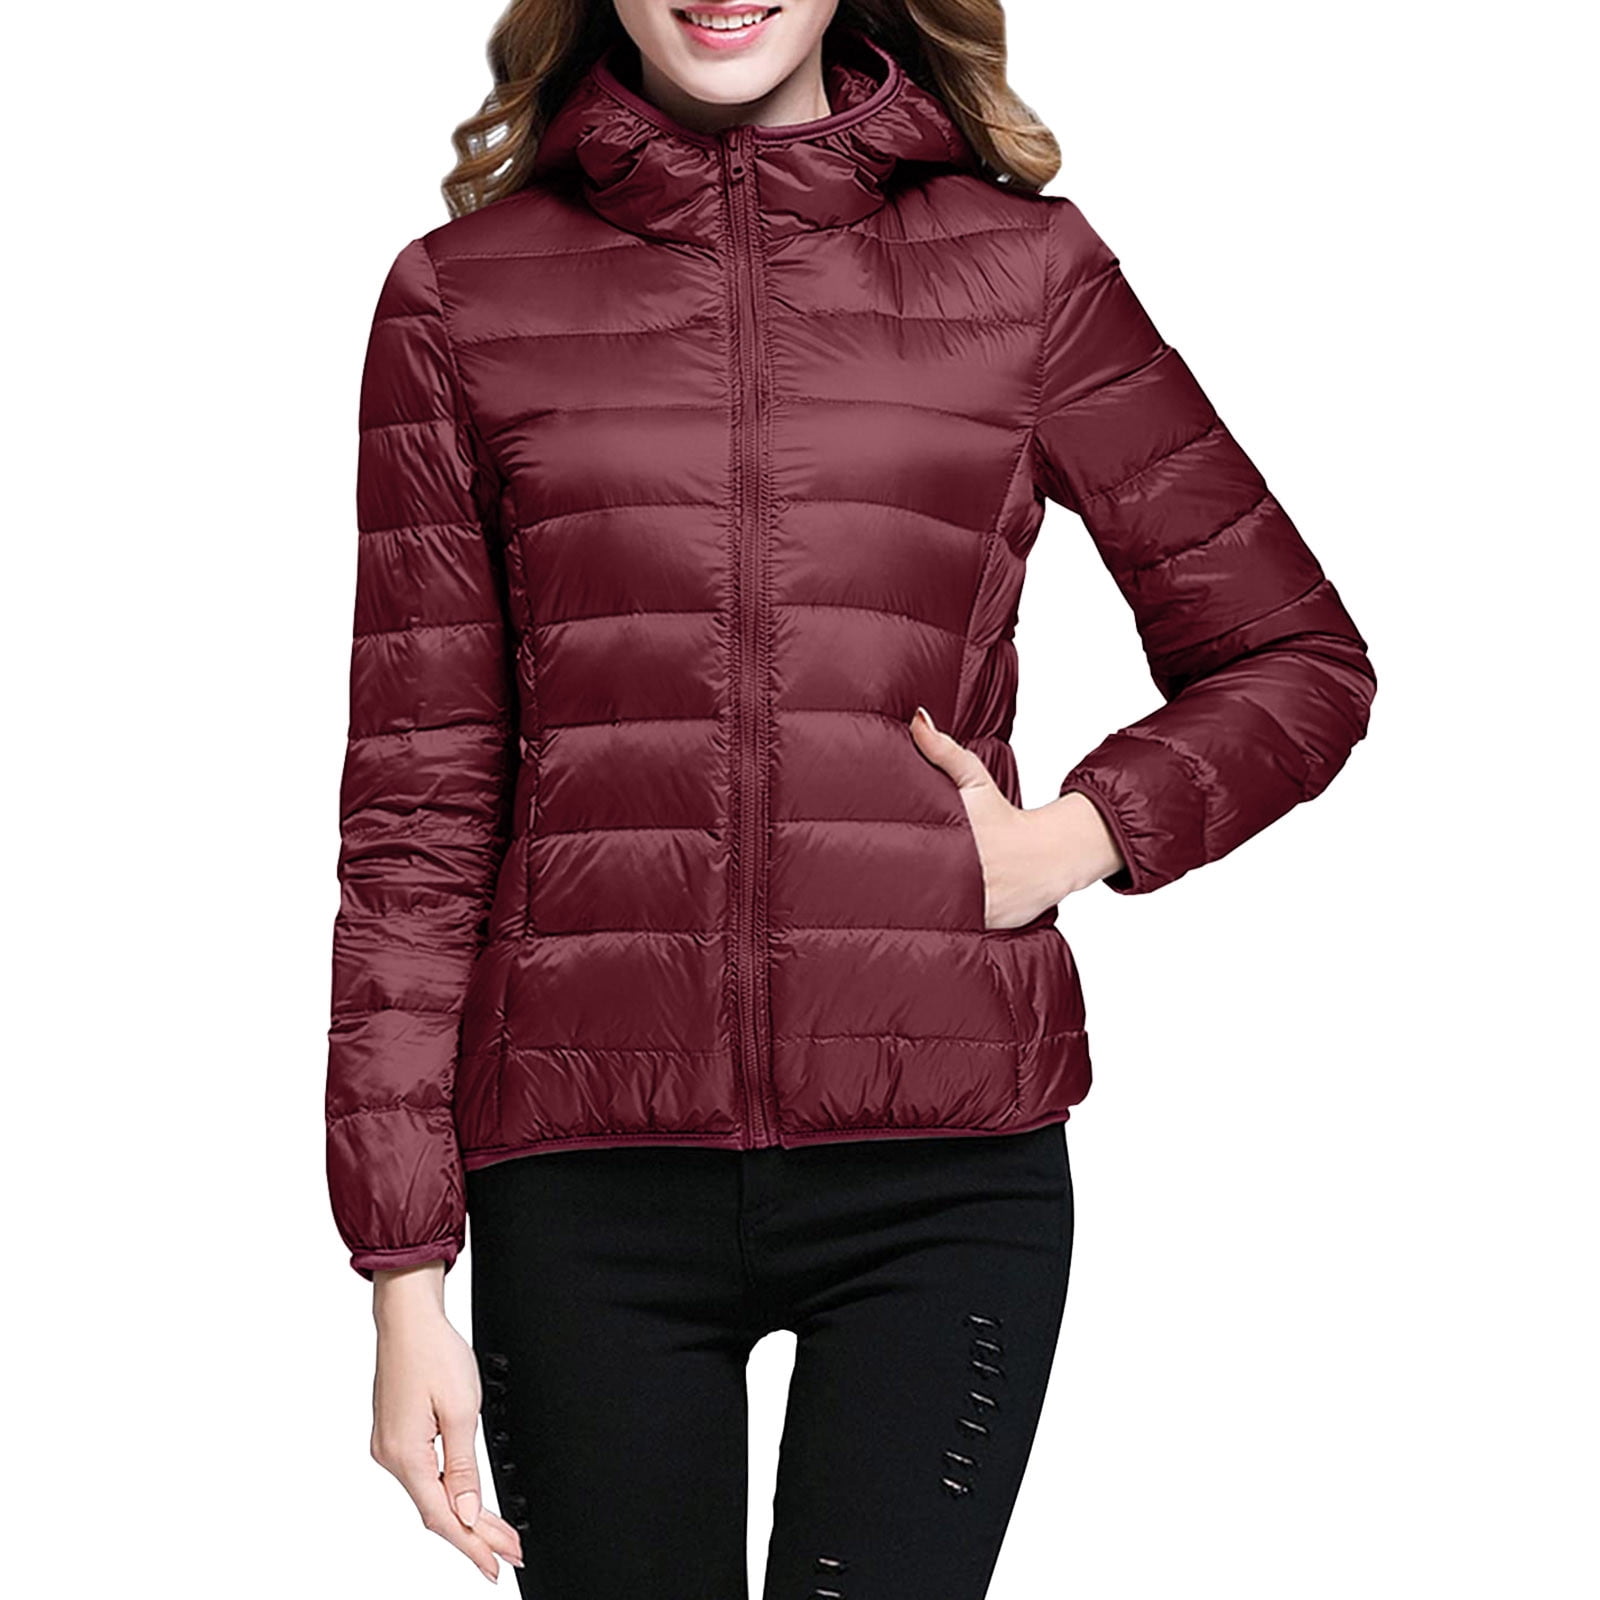 keusn women's packable down jacket lightweight puffer jacket